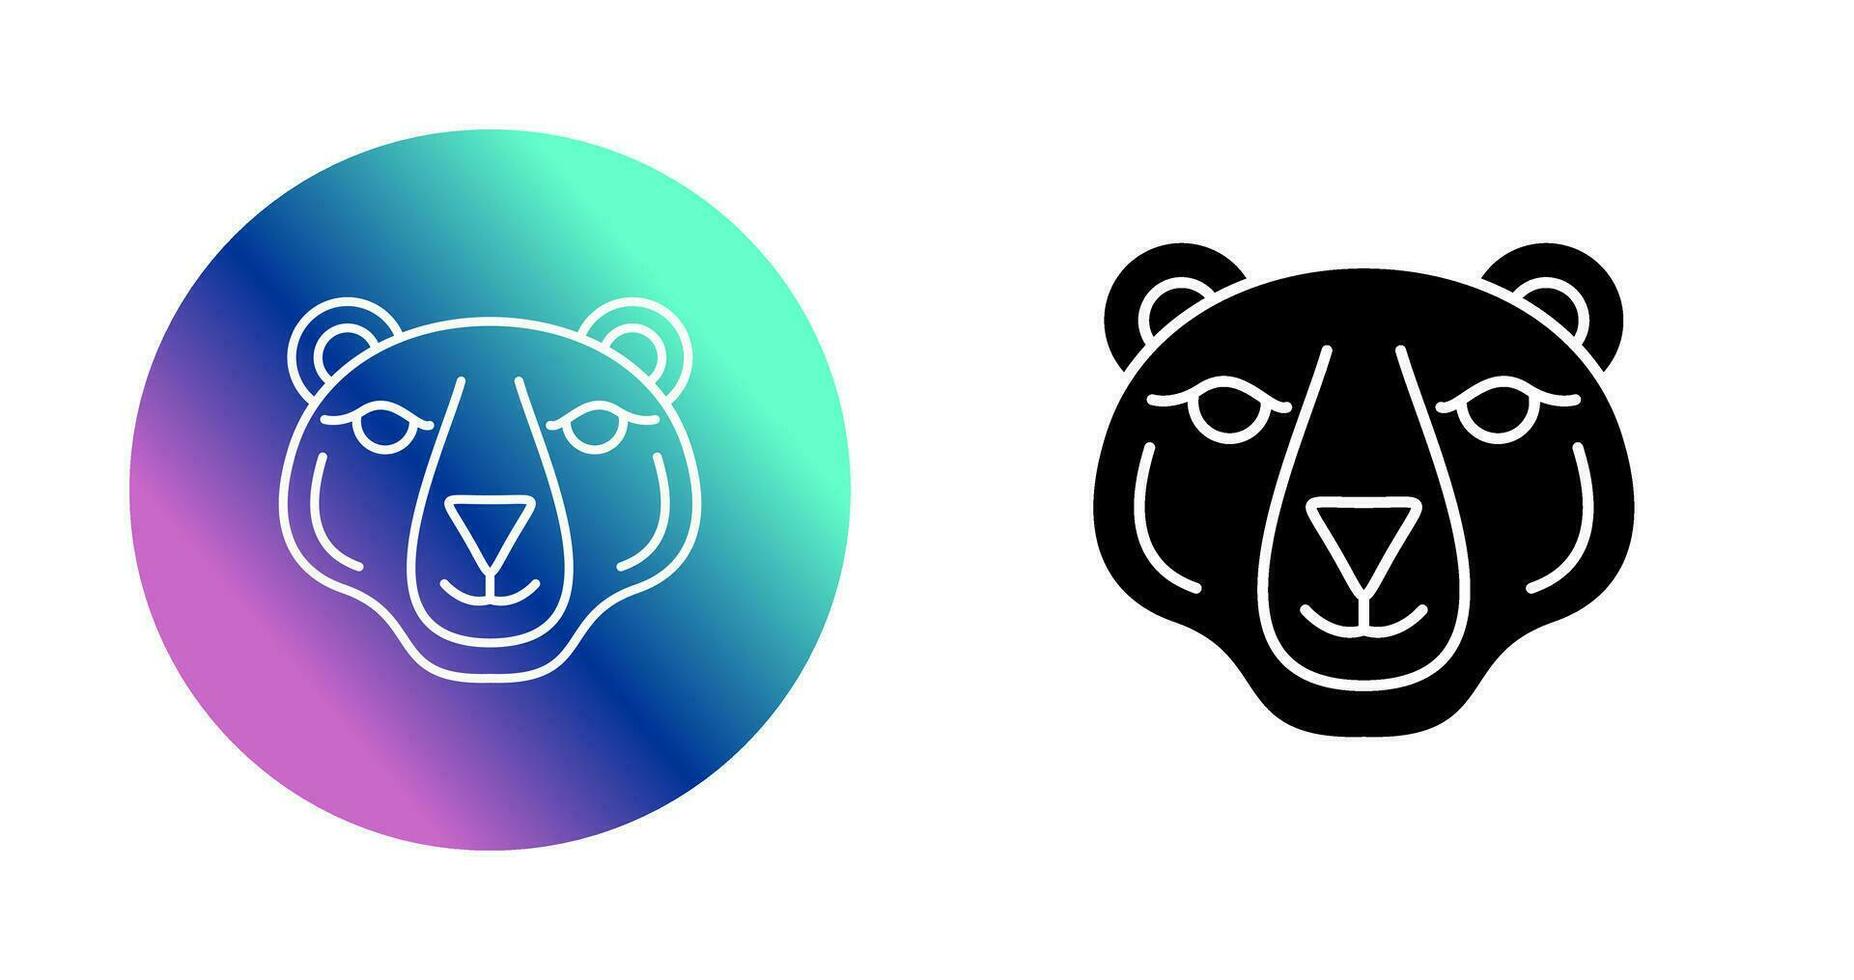 icône de vecteur d'ours polaire